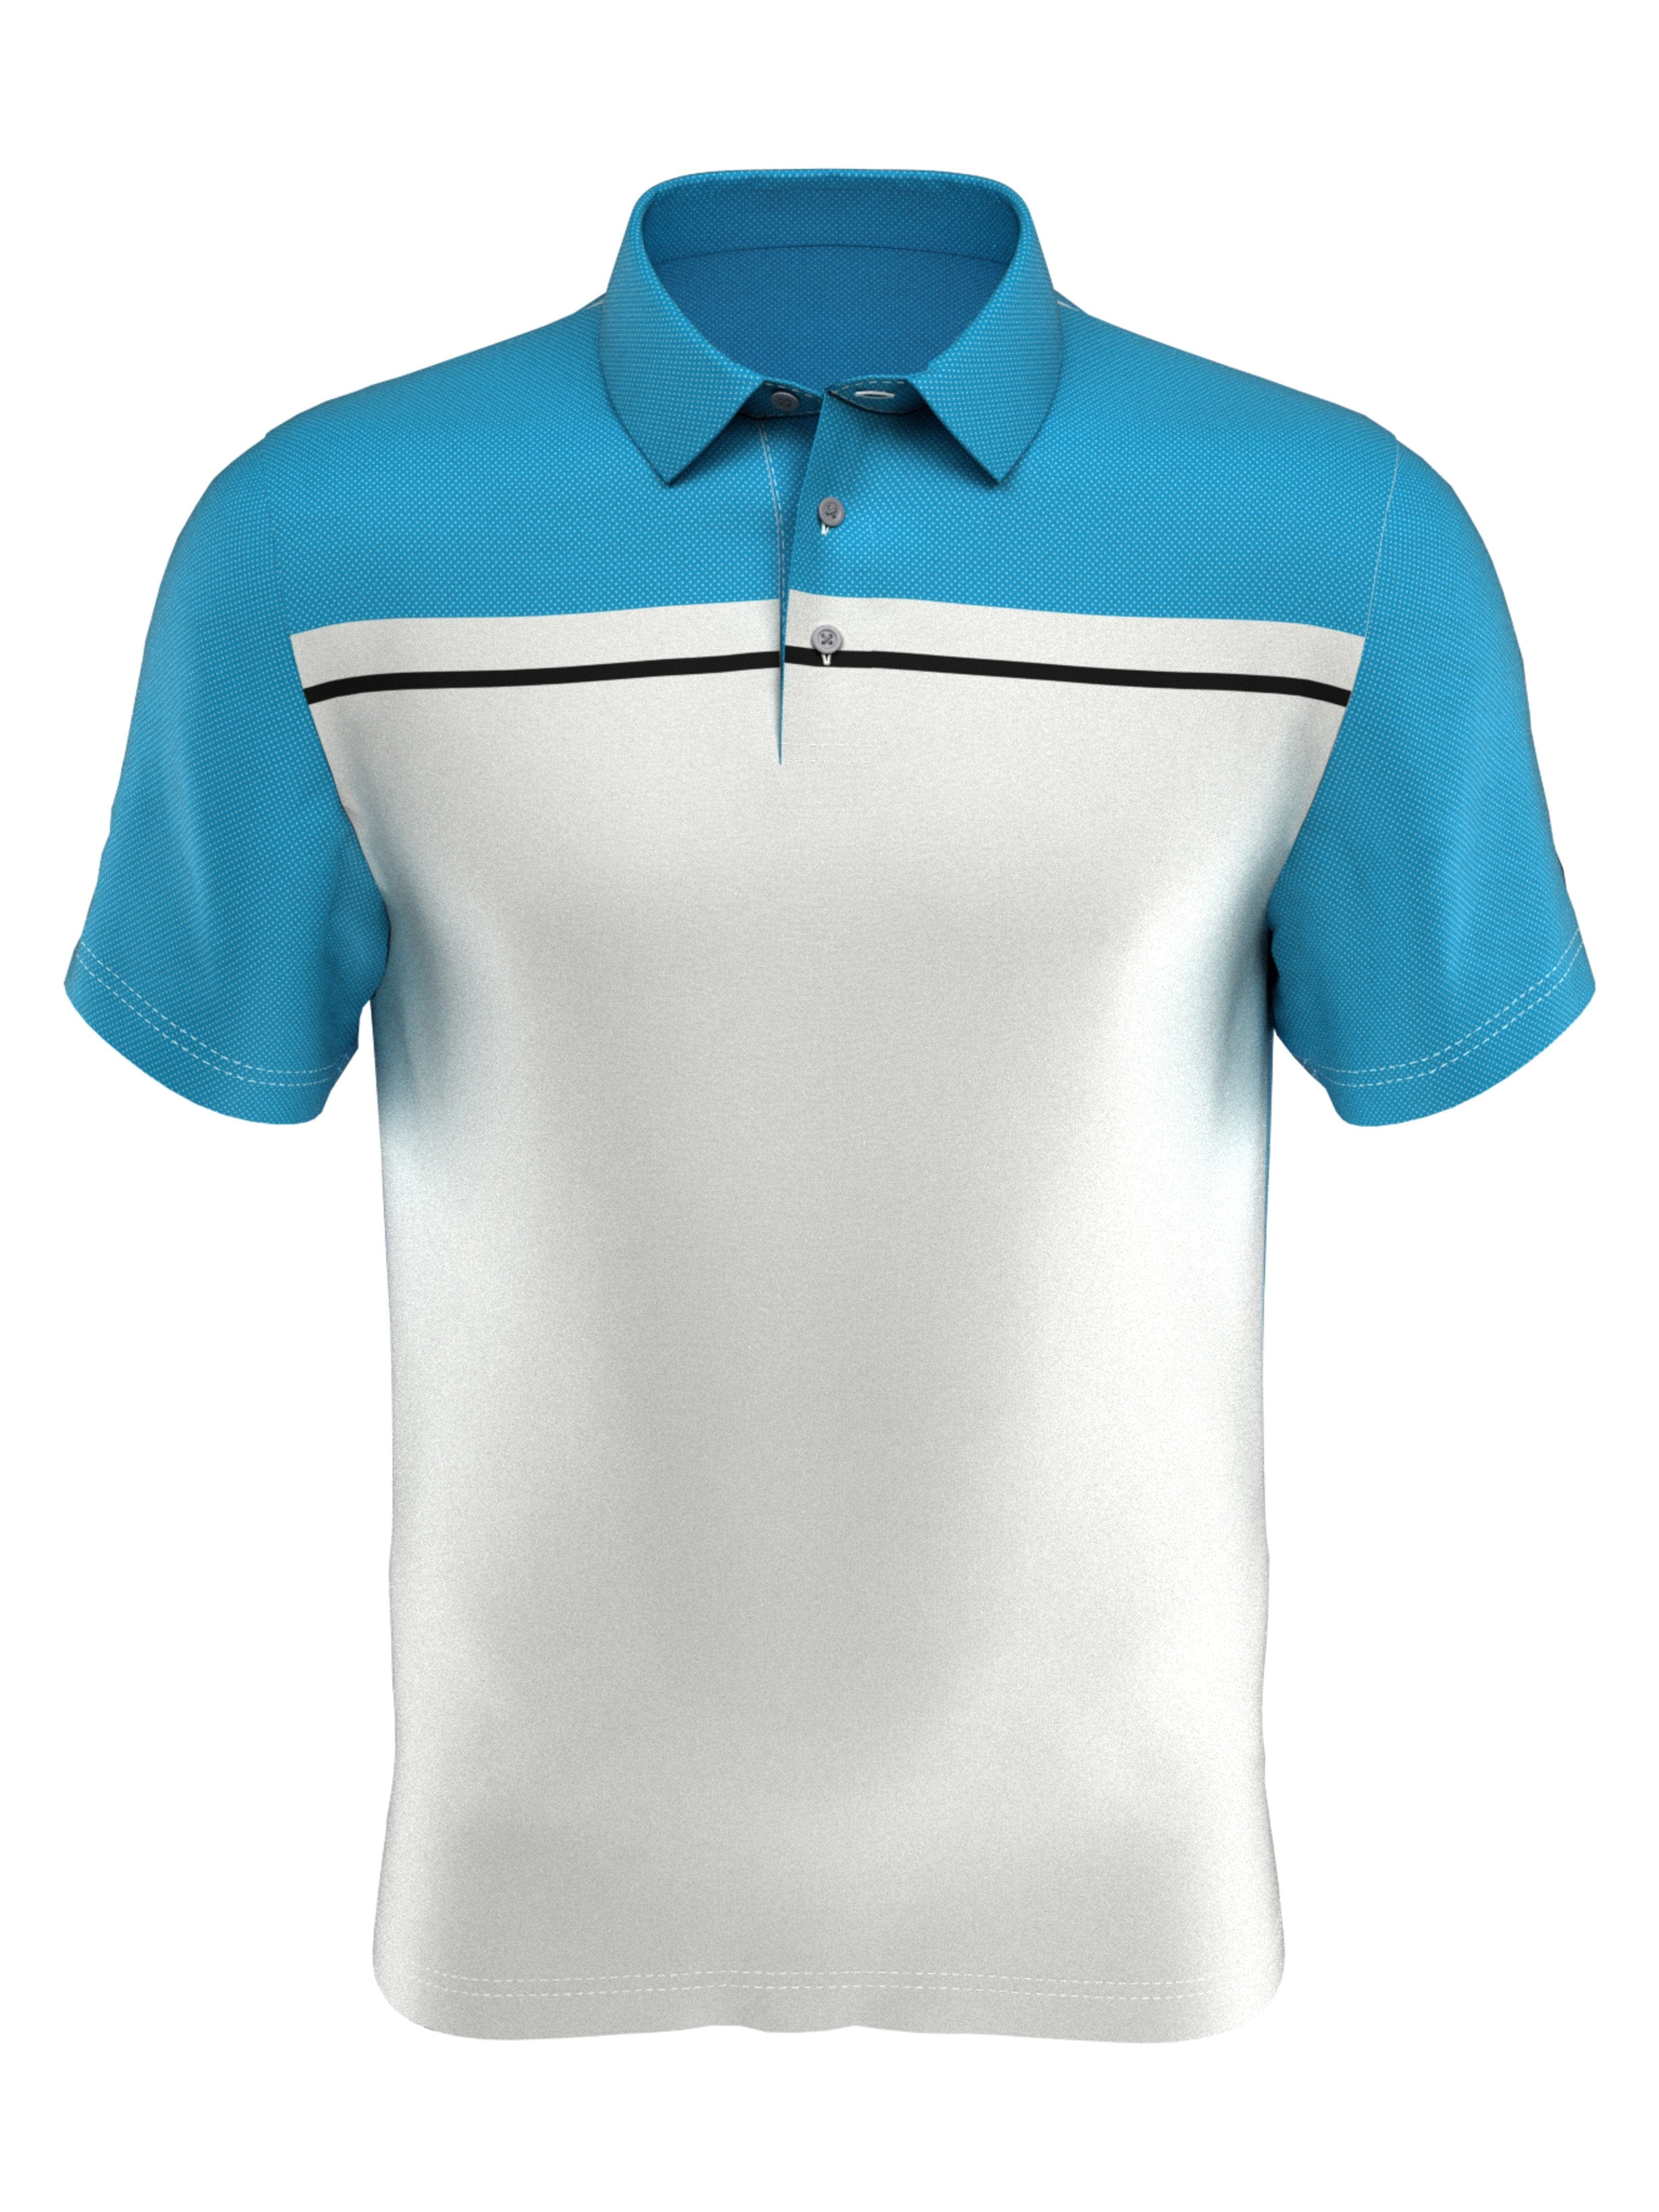 PGA TOUR Apparel Boys Birdseye Print Polo Shirt, Size Medium, White, 100% Polyester | Golf Apparel Shop